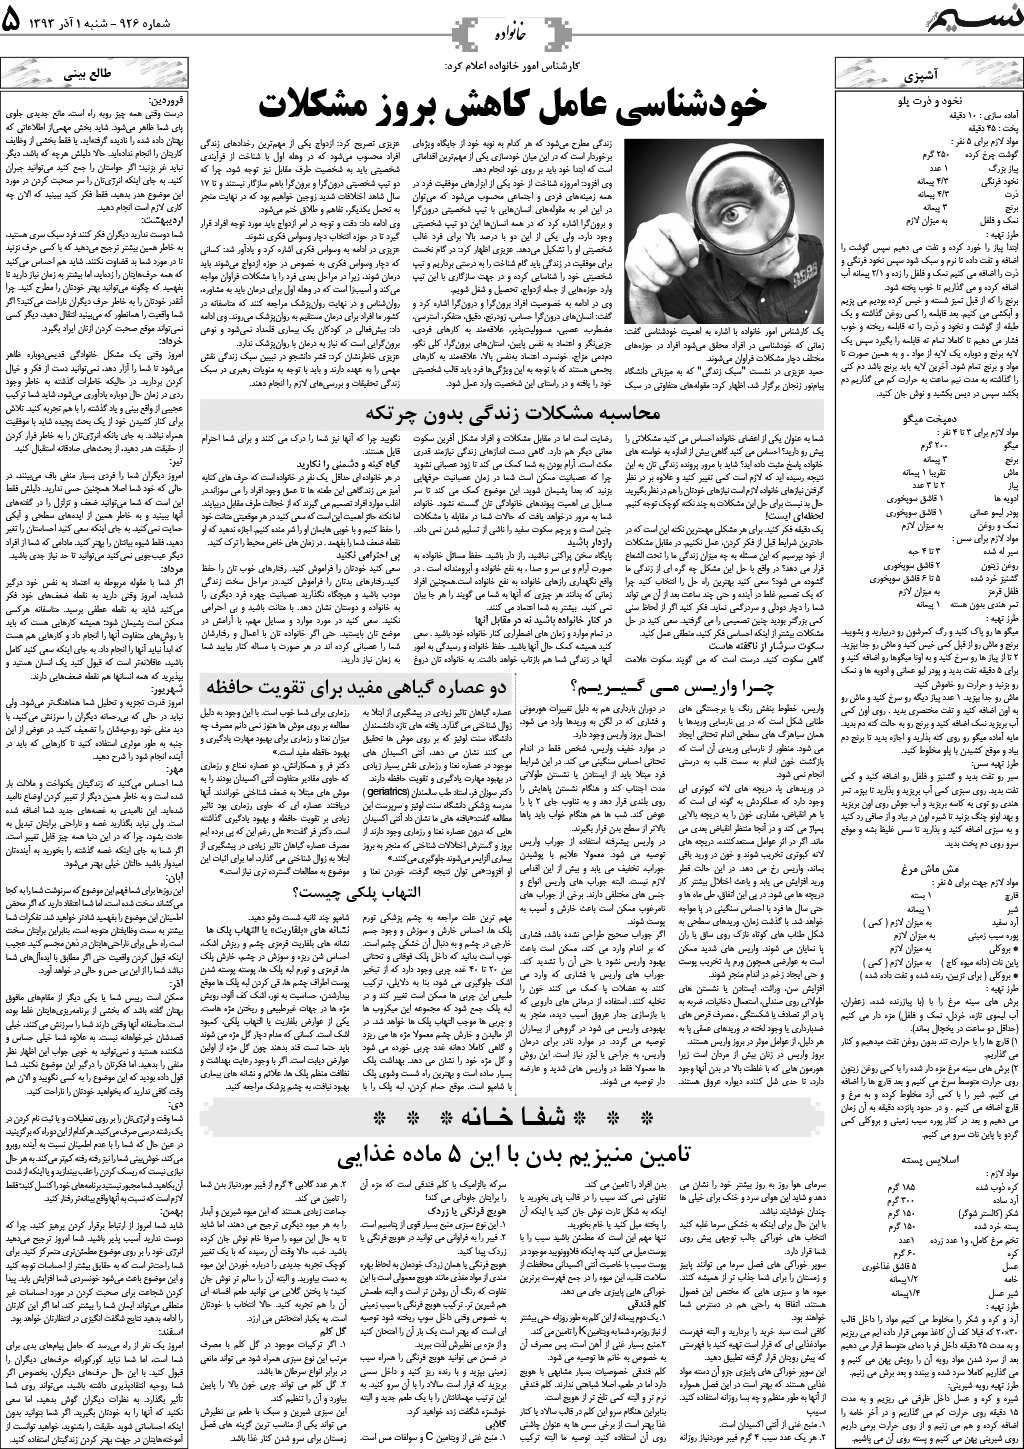 صفحه خانواده روزنامه نسیم شماره 926